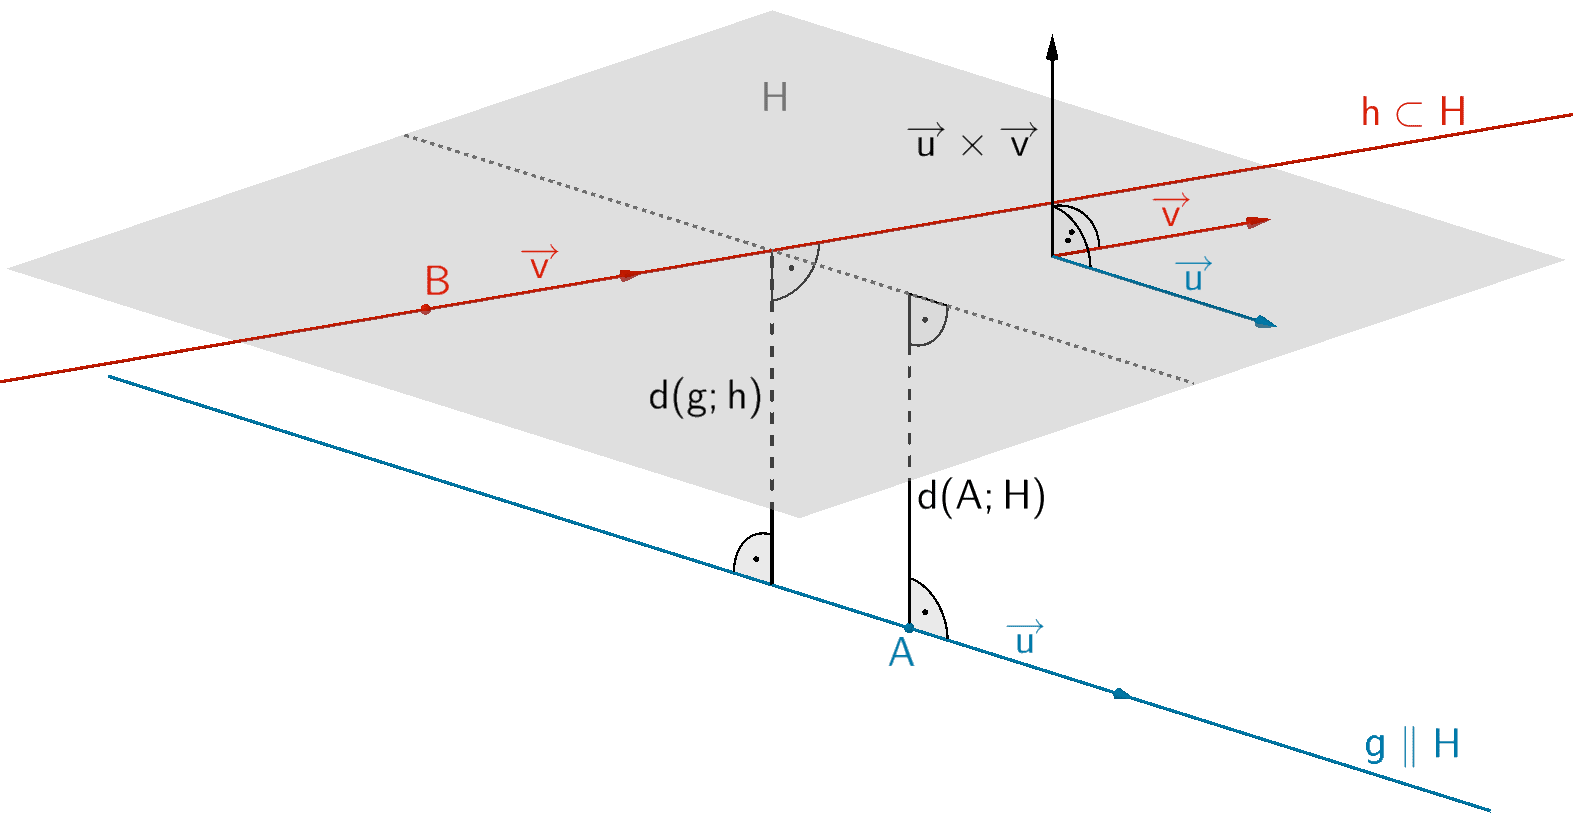 Bestimmung des Abstandes der windschiefen Geraden g und h mittels der Hilfsebene H mit h ⊂ H